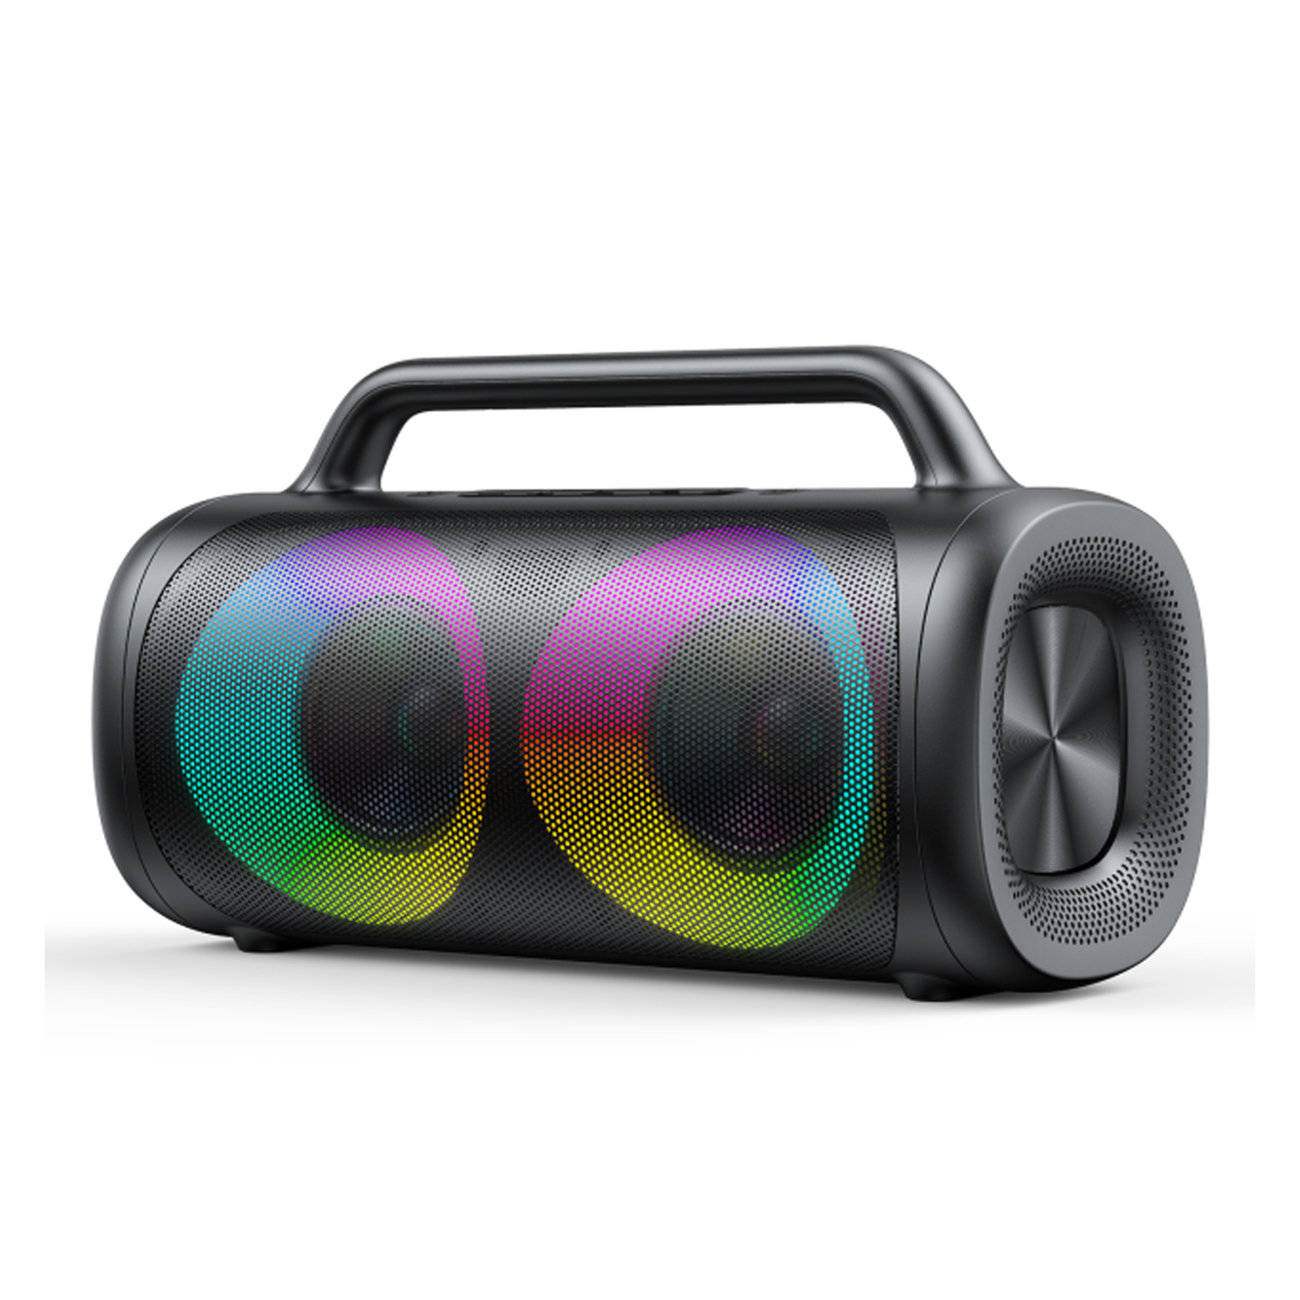 Joyroom bezprzewodowy głośnik bluetooth 5.1 z kolorowym oświetleniem LED czarny (JR-MW02)